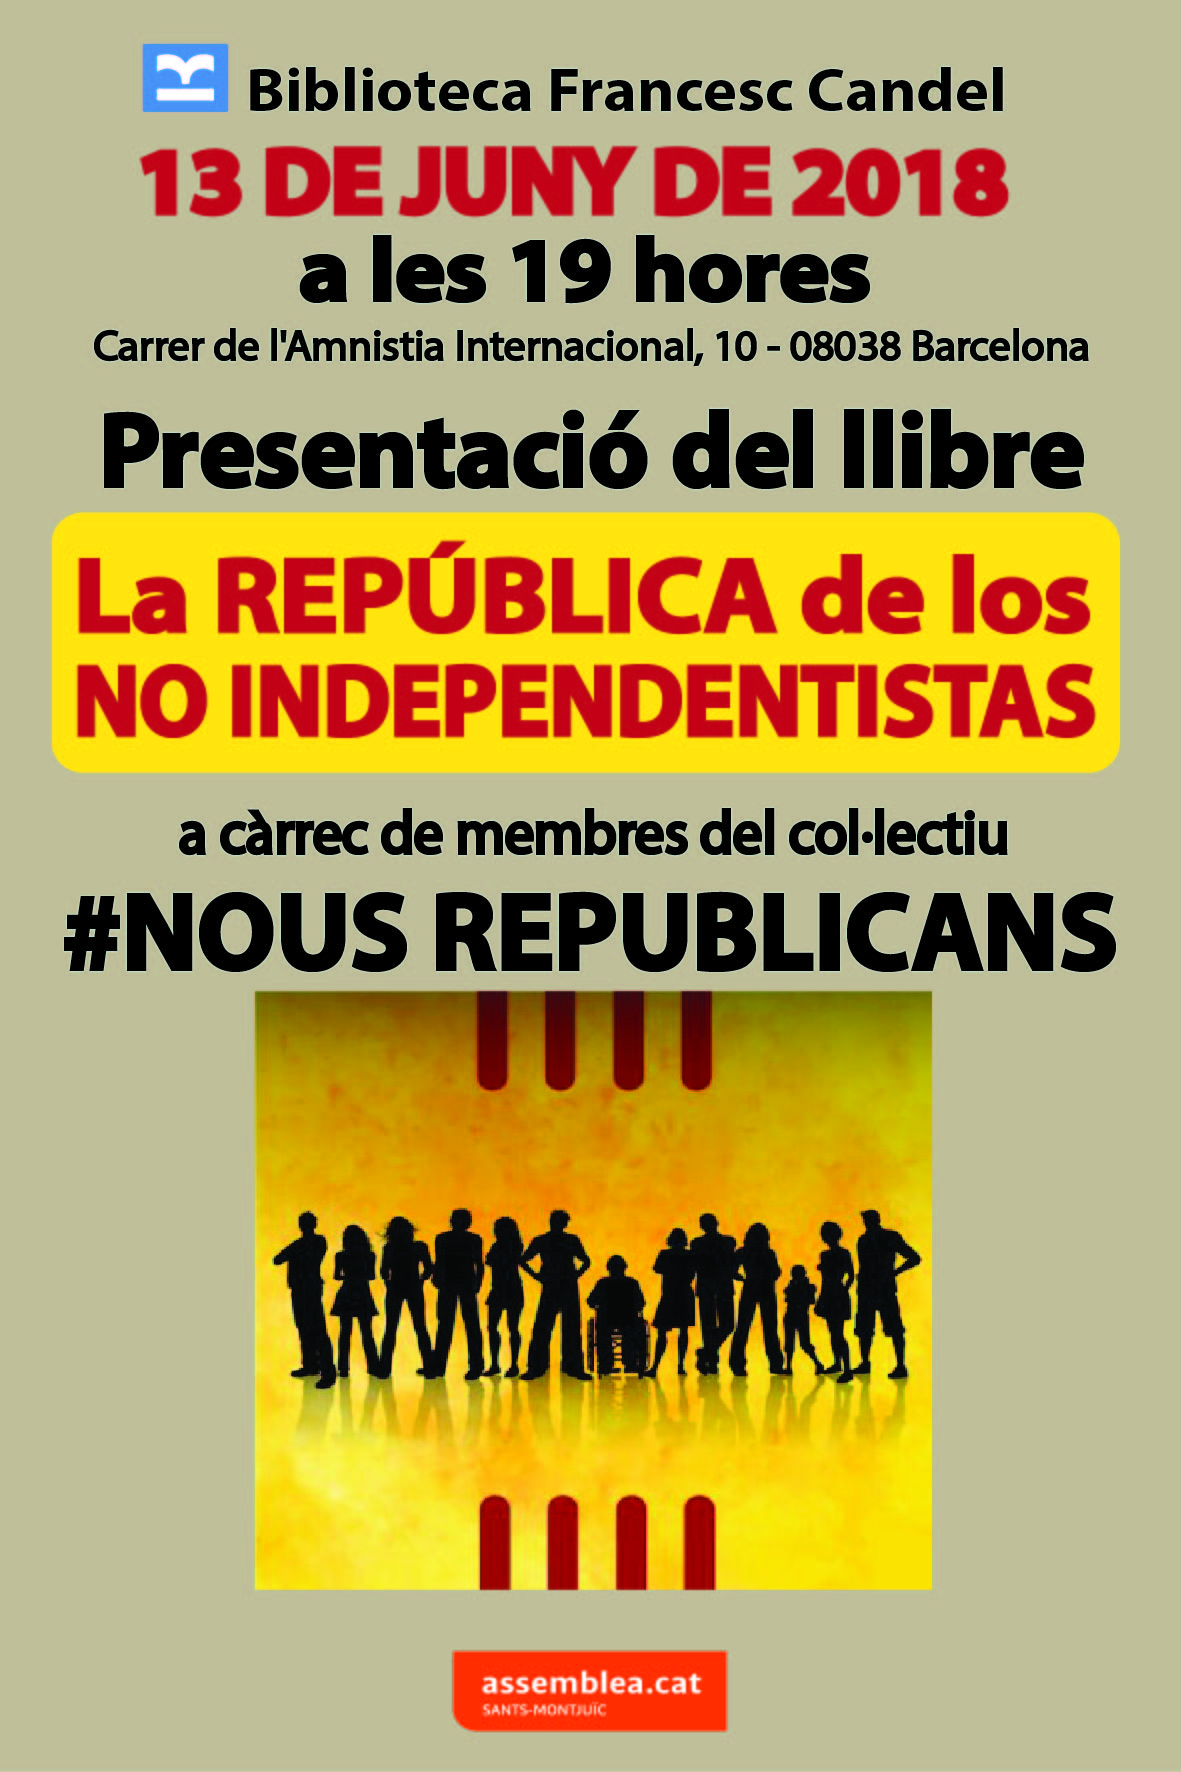 "La República de los no independentistas"